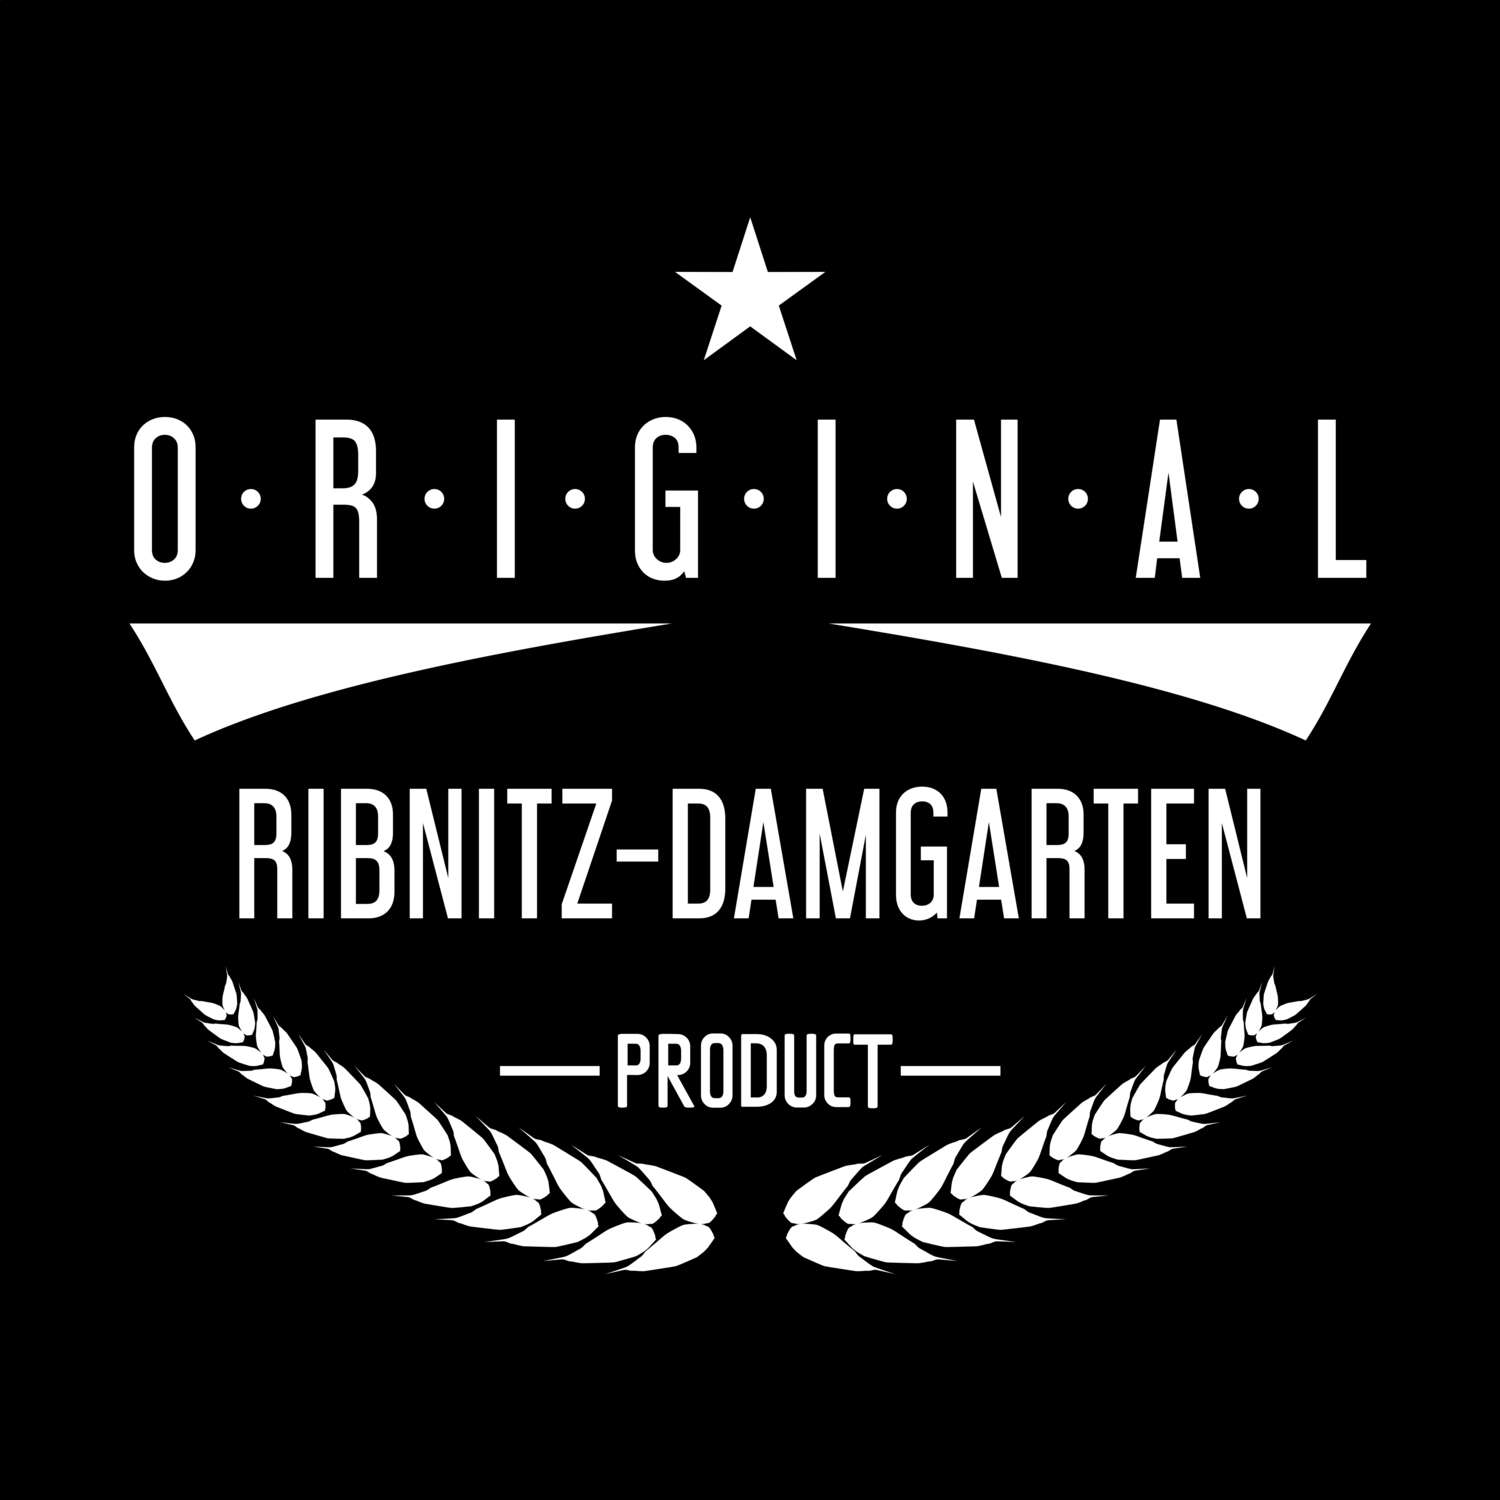 Ribnitz-Damgarten T-Shirt »Original Product«